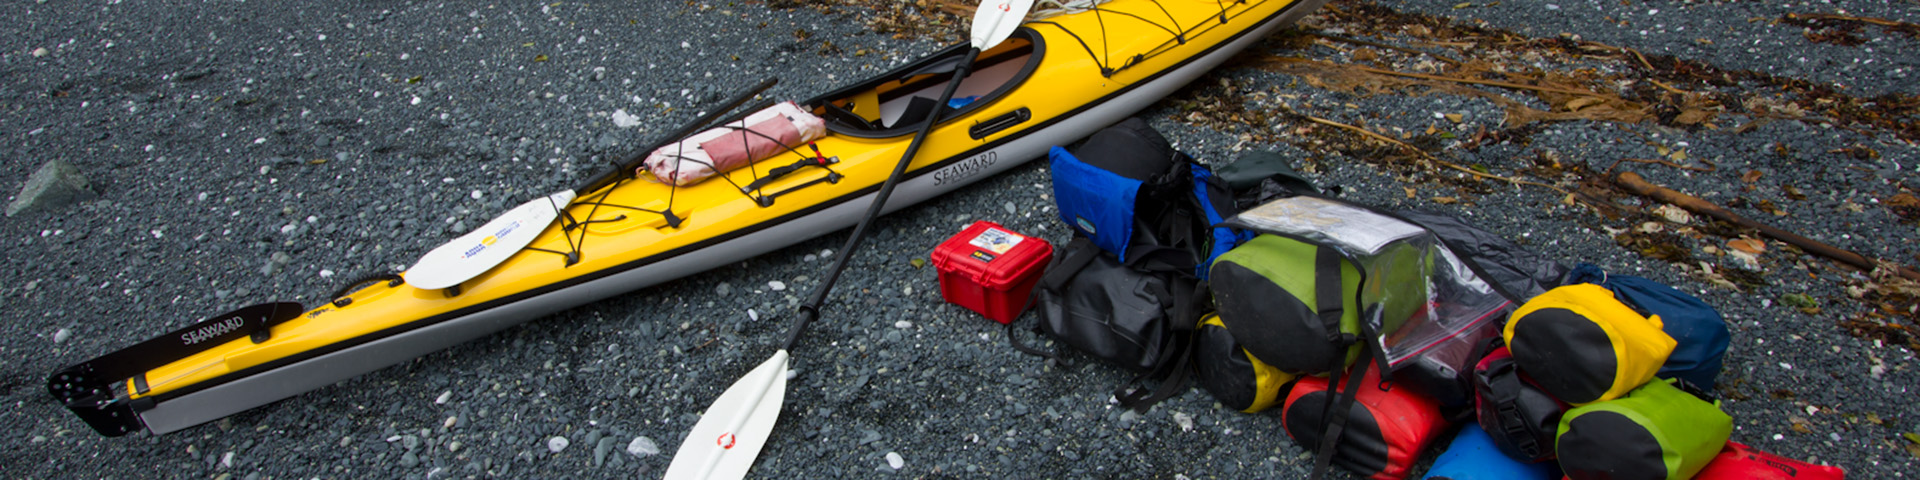 Kayak et matériel sur la plage